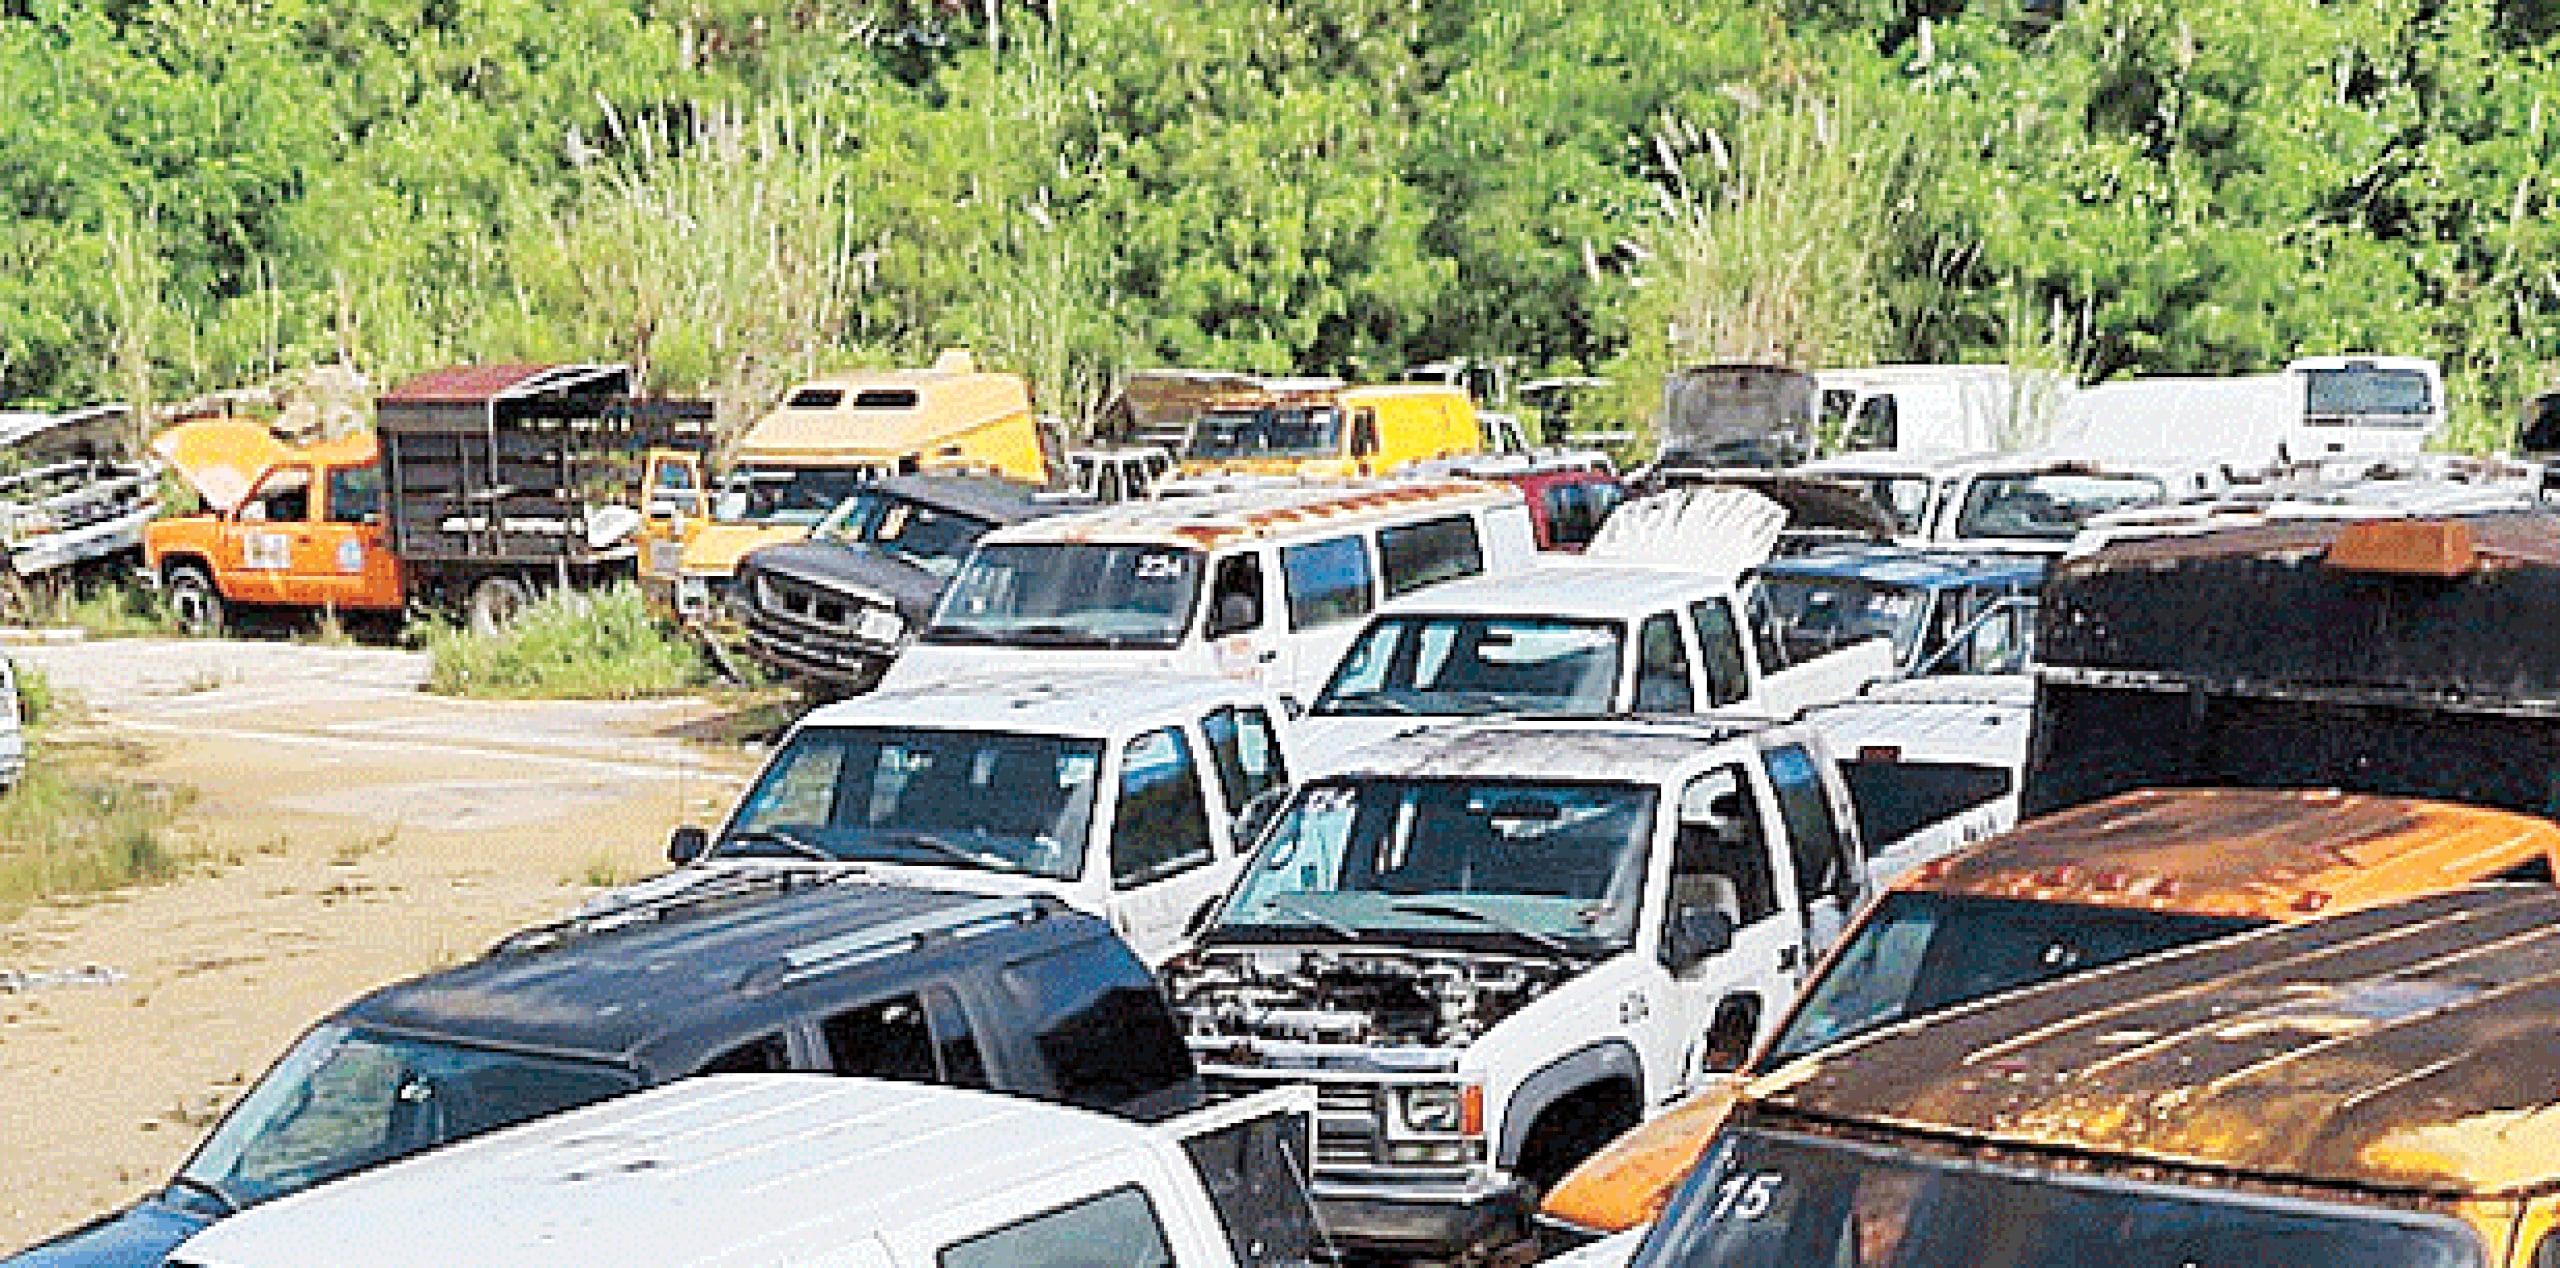 Personal de la División de Vehículos Hurtados de Vega Alta acudirá al lugar para ocupar los autos. (Archivo)